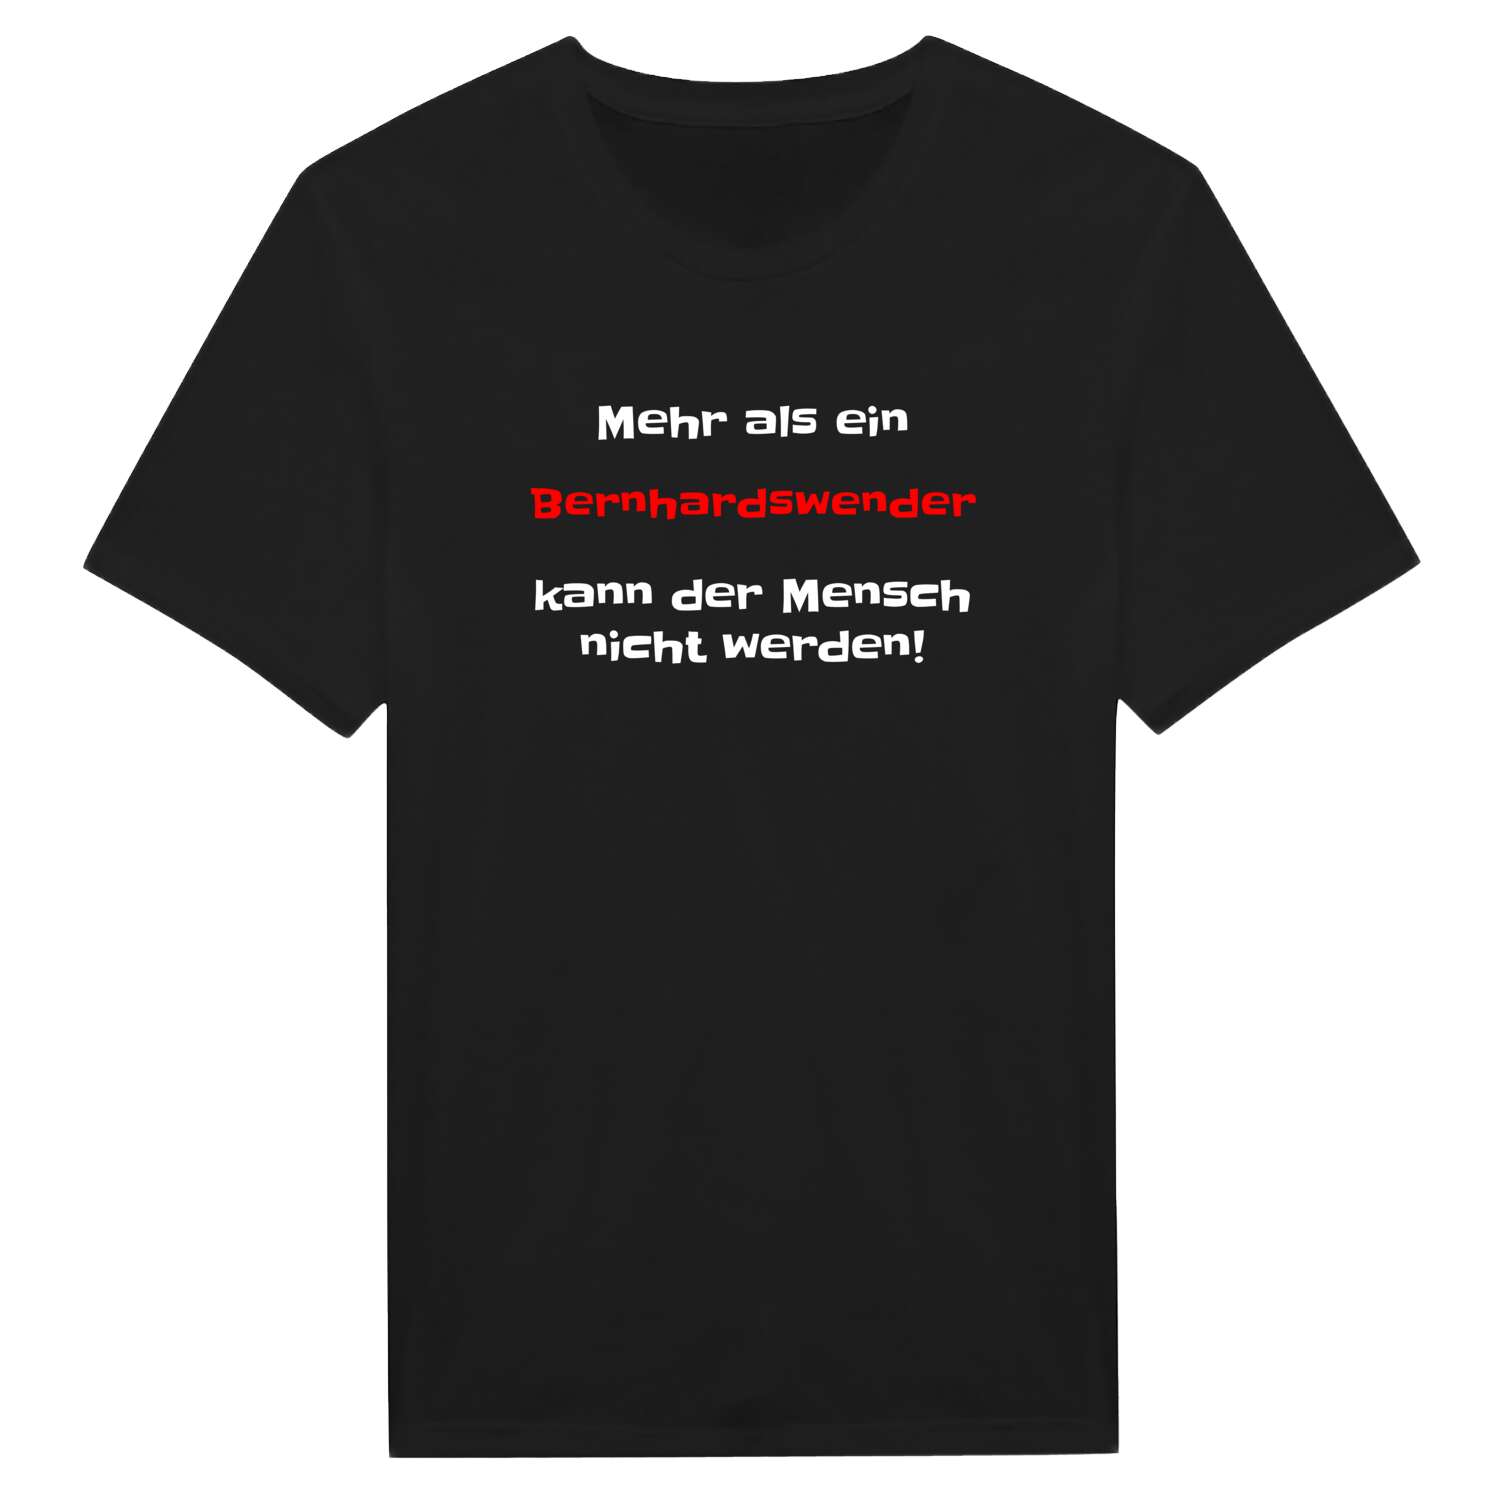 Bernhardswend T-Shirt »Mehr als ein«